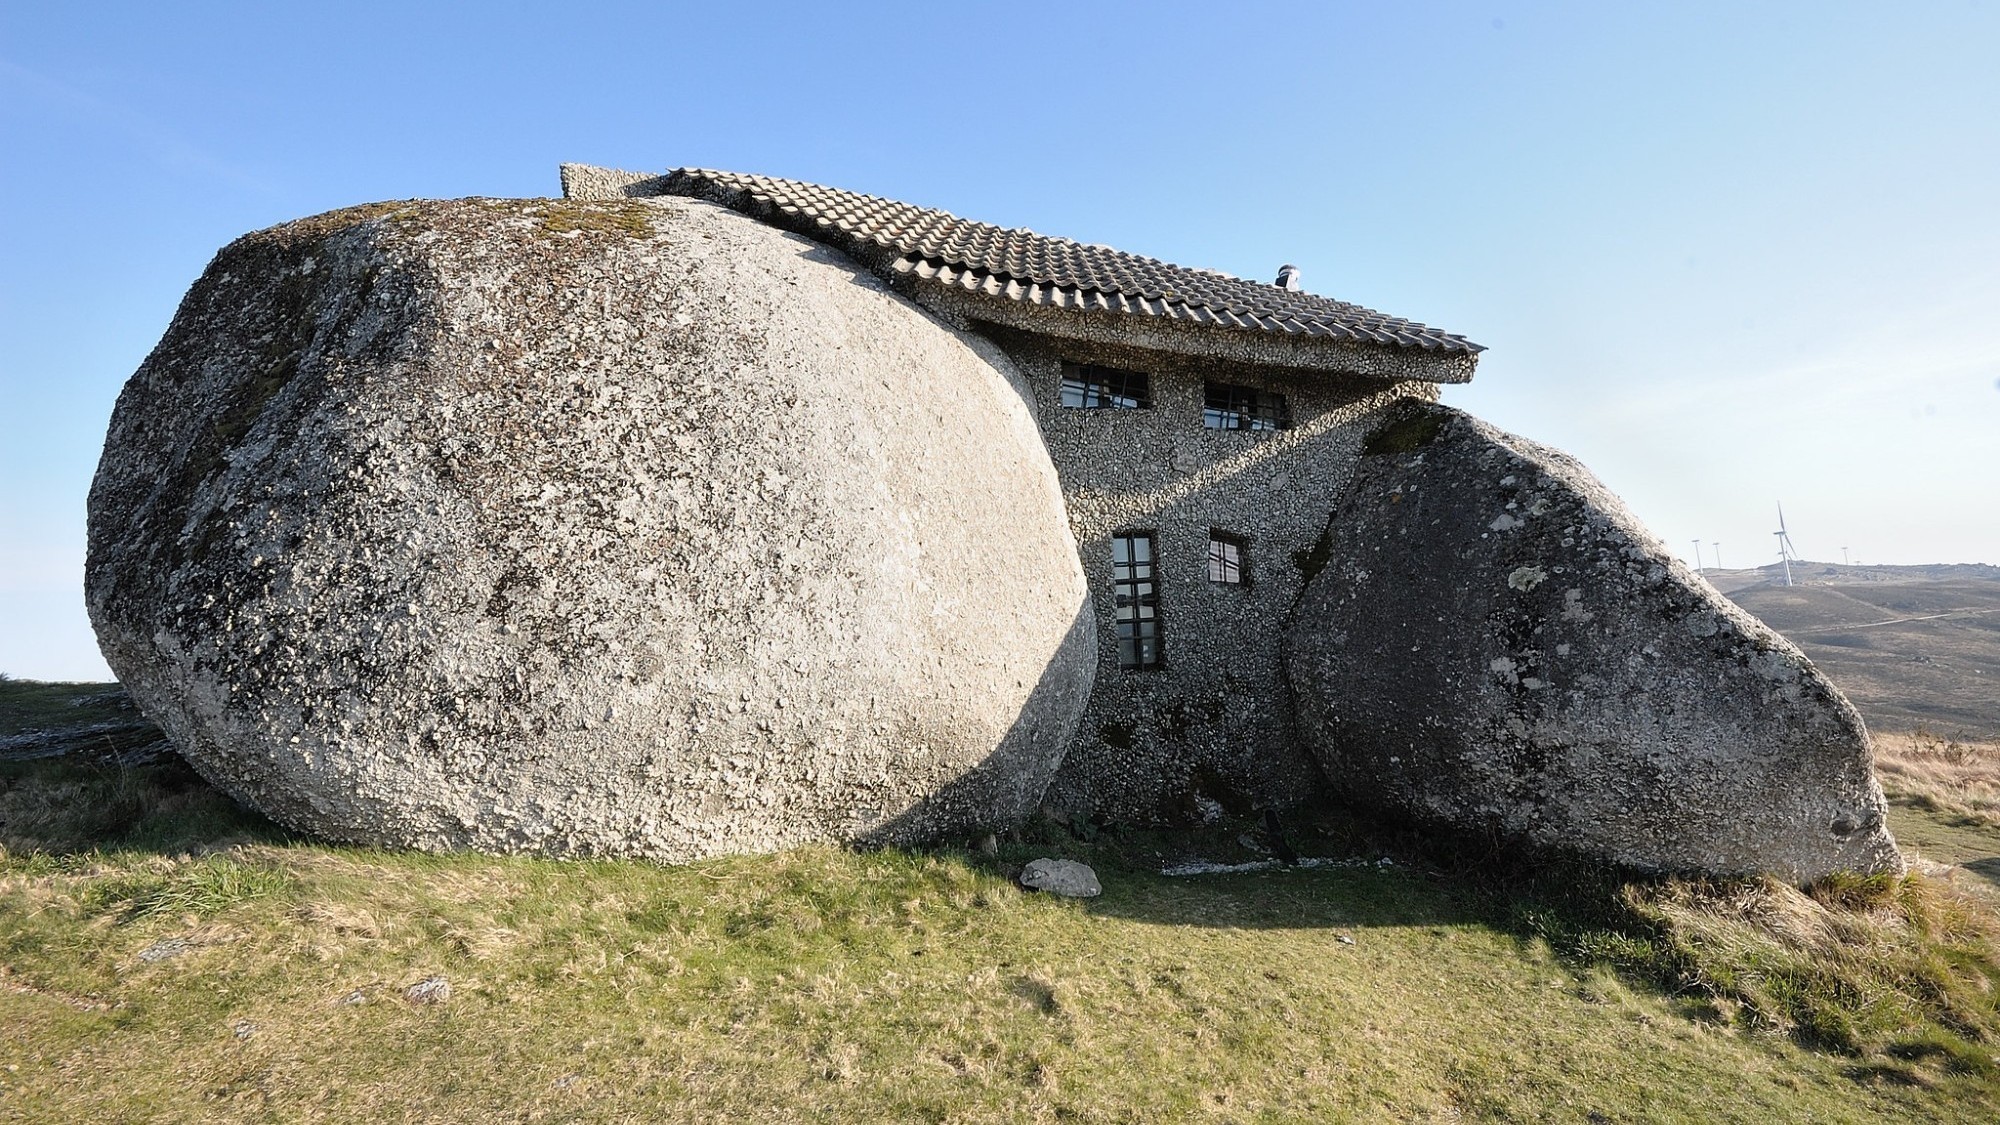 La Casa do Penedo dans la commune de Fafe au Portugal a été construite à partir de quatre énormes blocs de roche. Elle se trouve à proximité d'éoliennes.